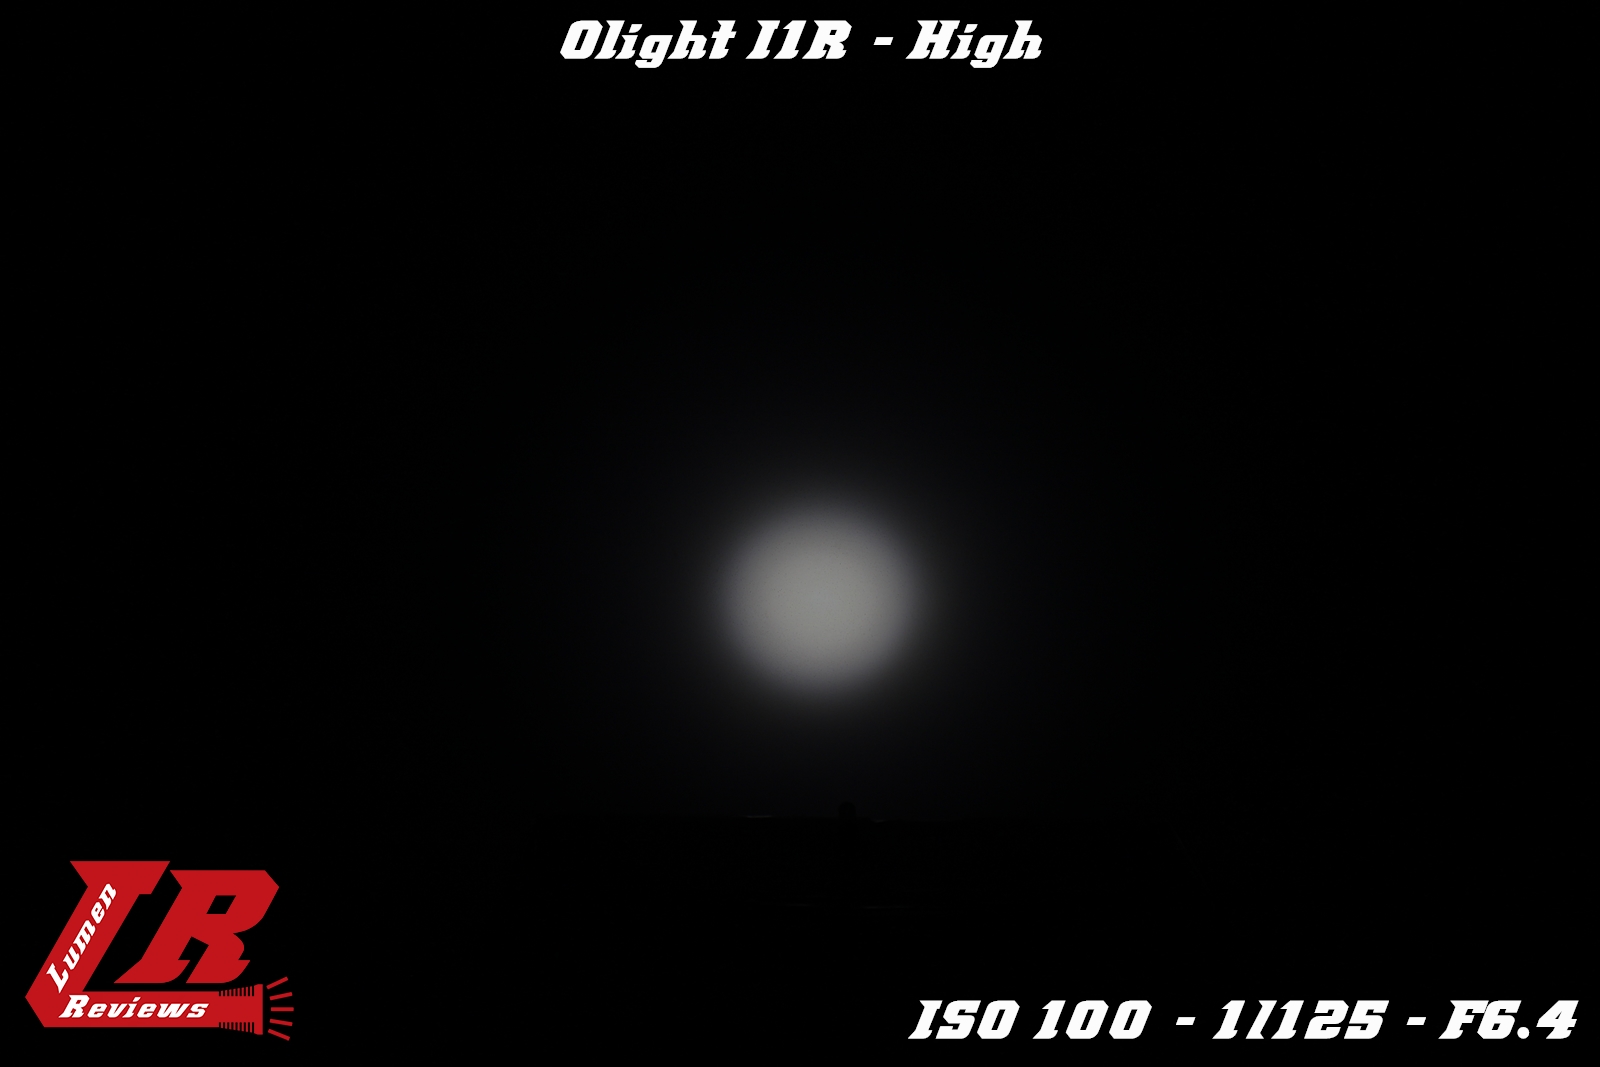 Olight_I1R_18.jpg